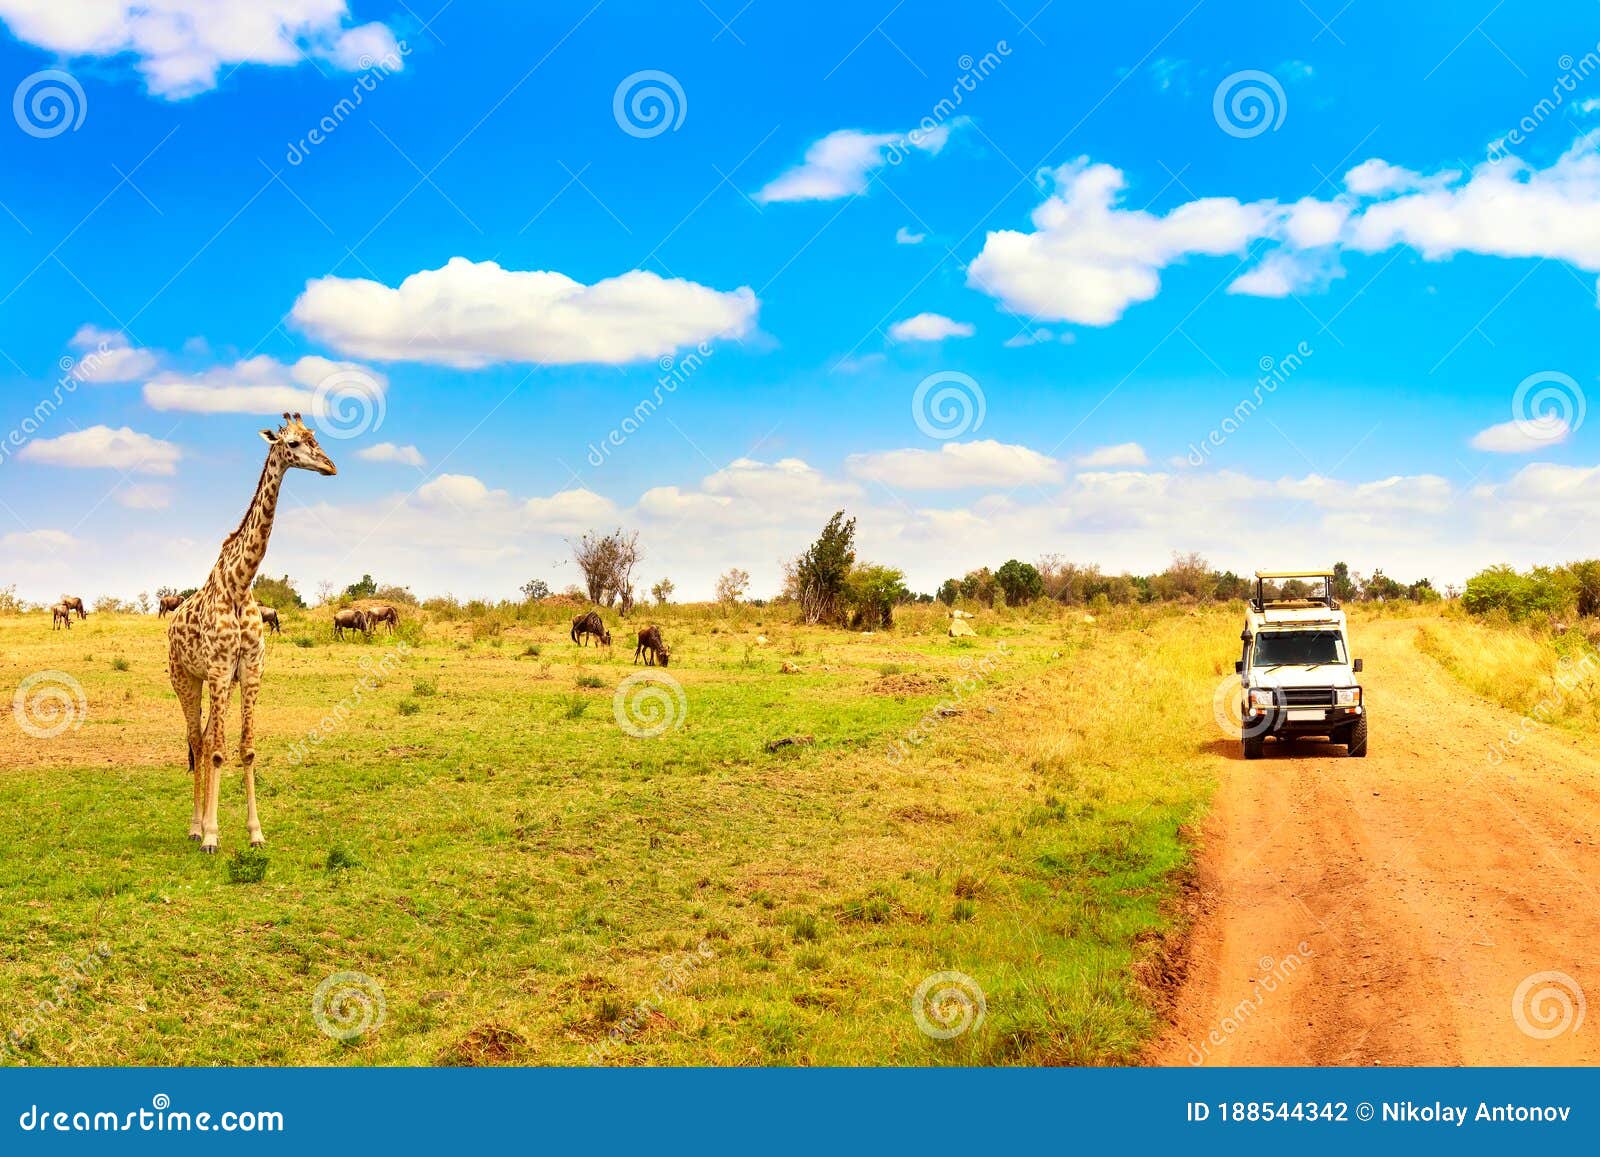 wild giraffe near safari car in masai mara national park, kenya. safari concept. african travel landscape